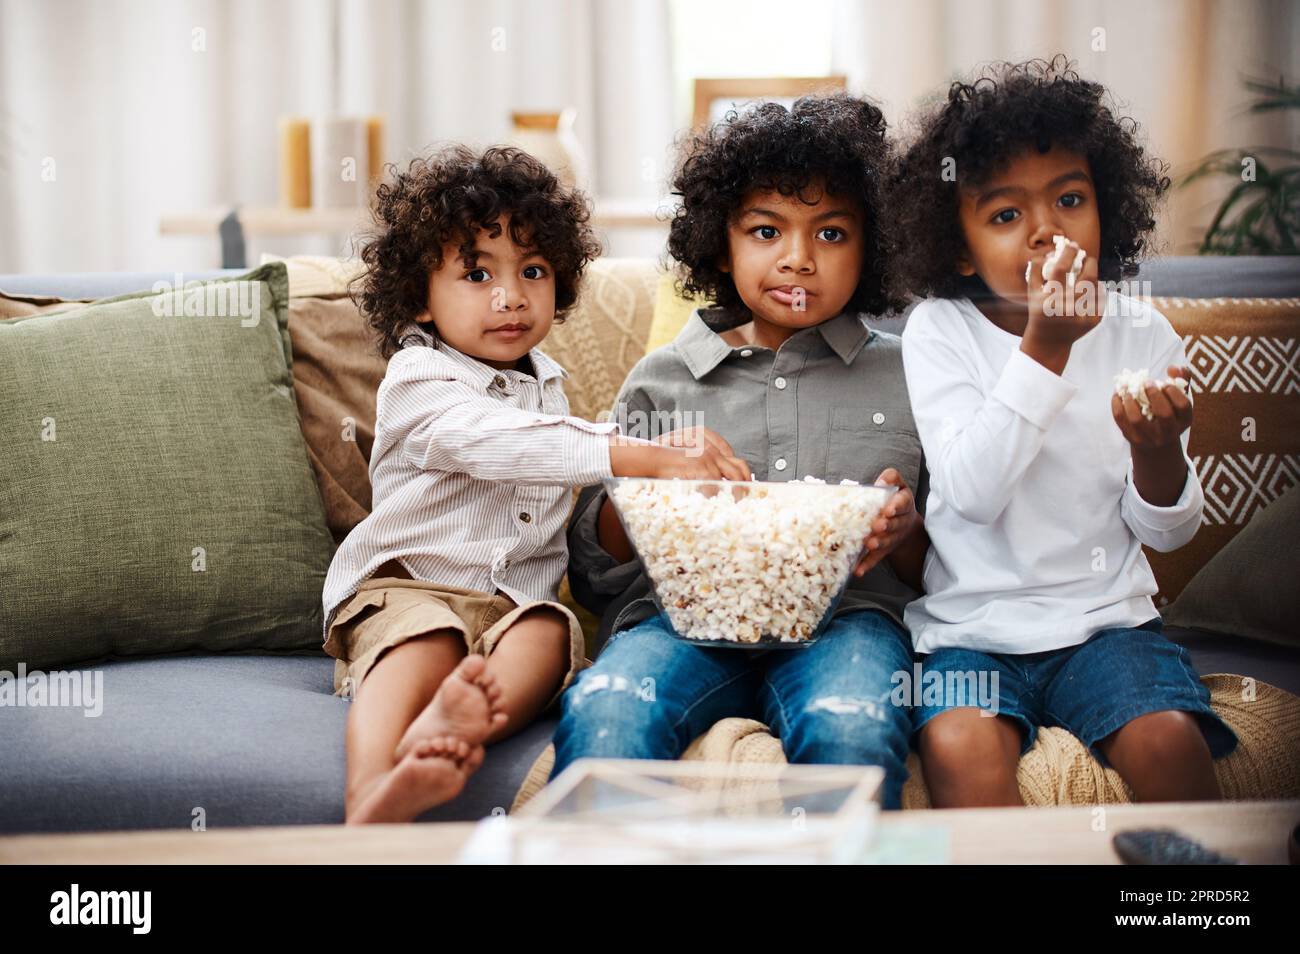 Jungs werden Jungen sein. Drei liebenswerte kleine Jungen essen Popcorn und schauen sich gemeinsam zu Hause Filme an. Stockfoto